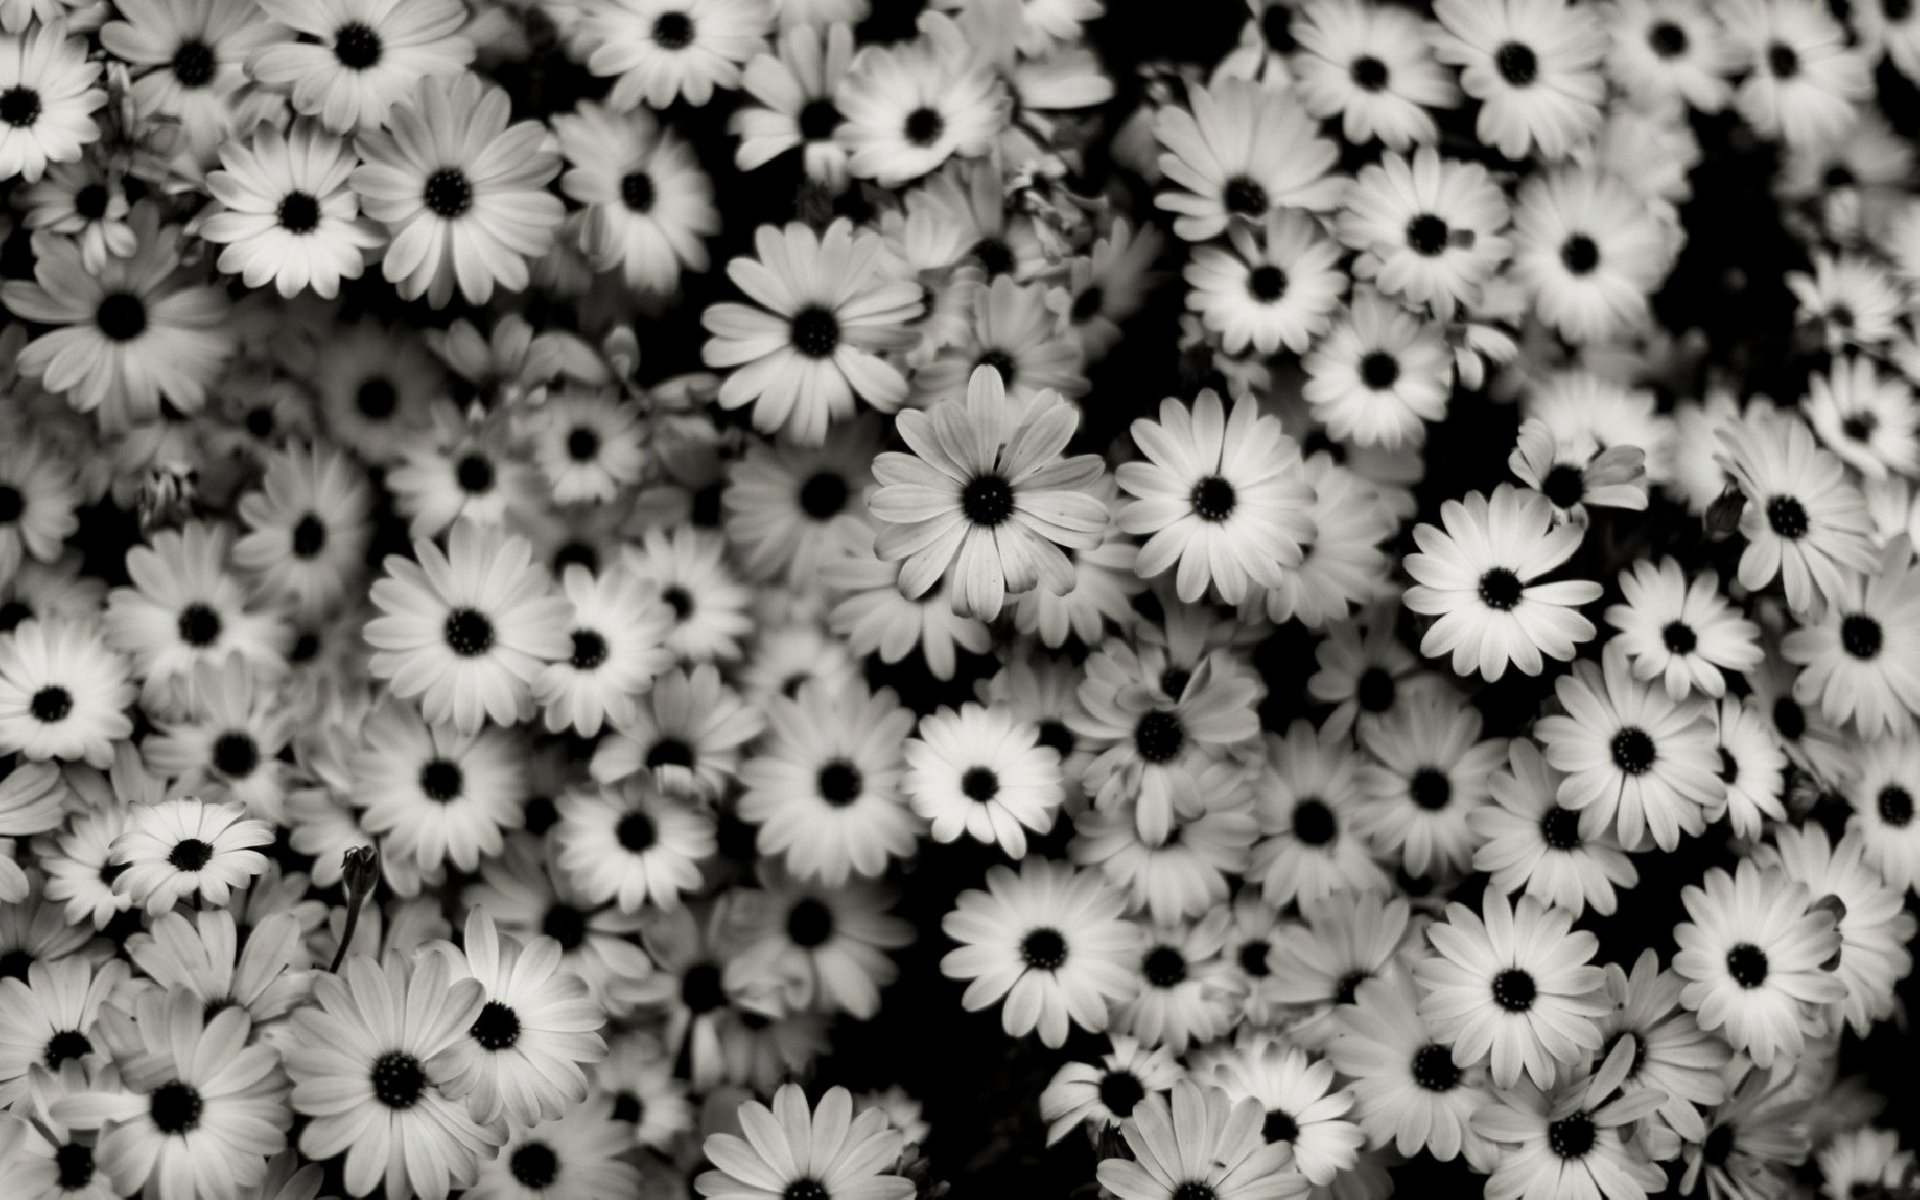 34+] Black and White Floral Desktop Wallpapers - WallpaperSafari